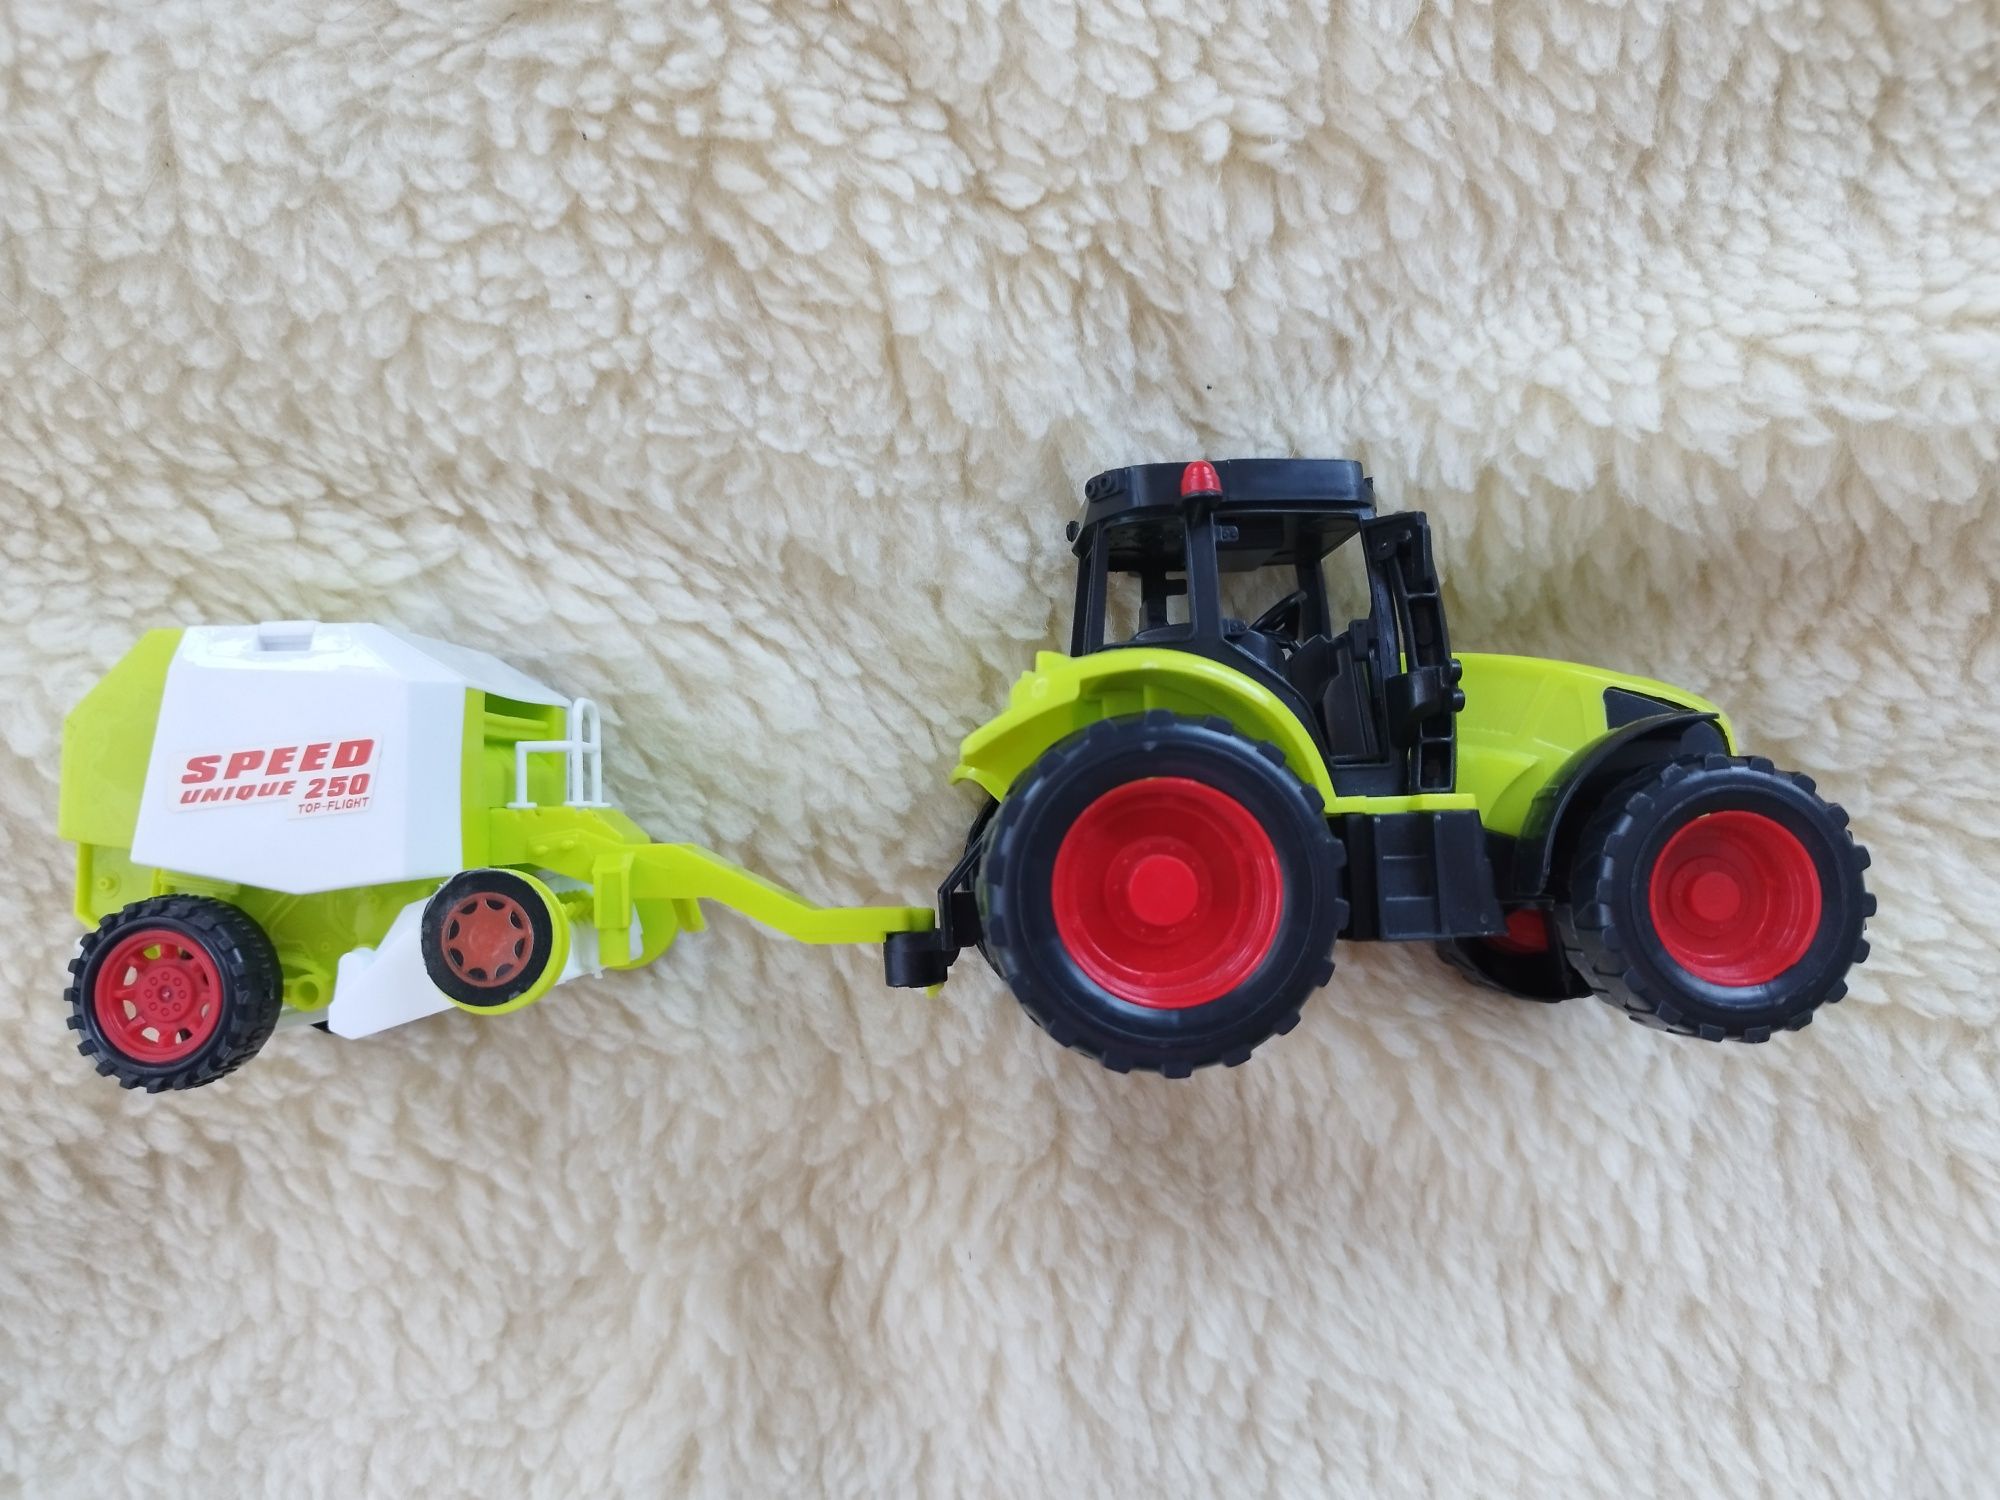 Traktor + prasa zabawki dla chłopca